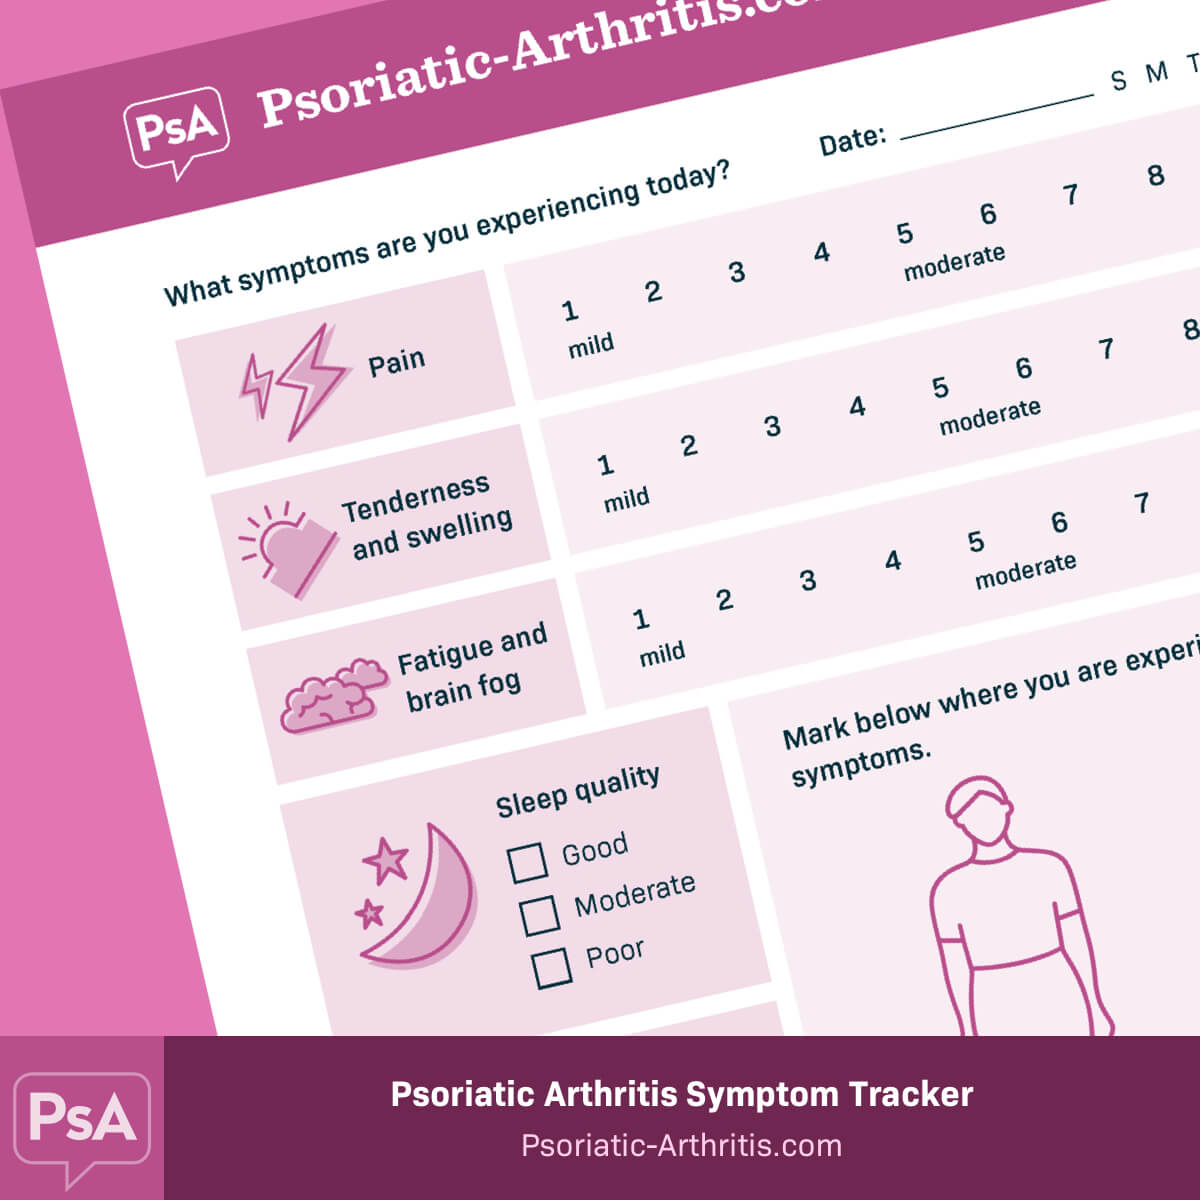 Psoriatic-Arthritis.com Symptom Tracker